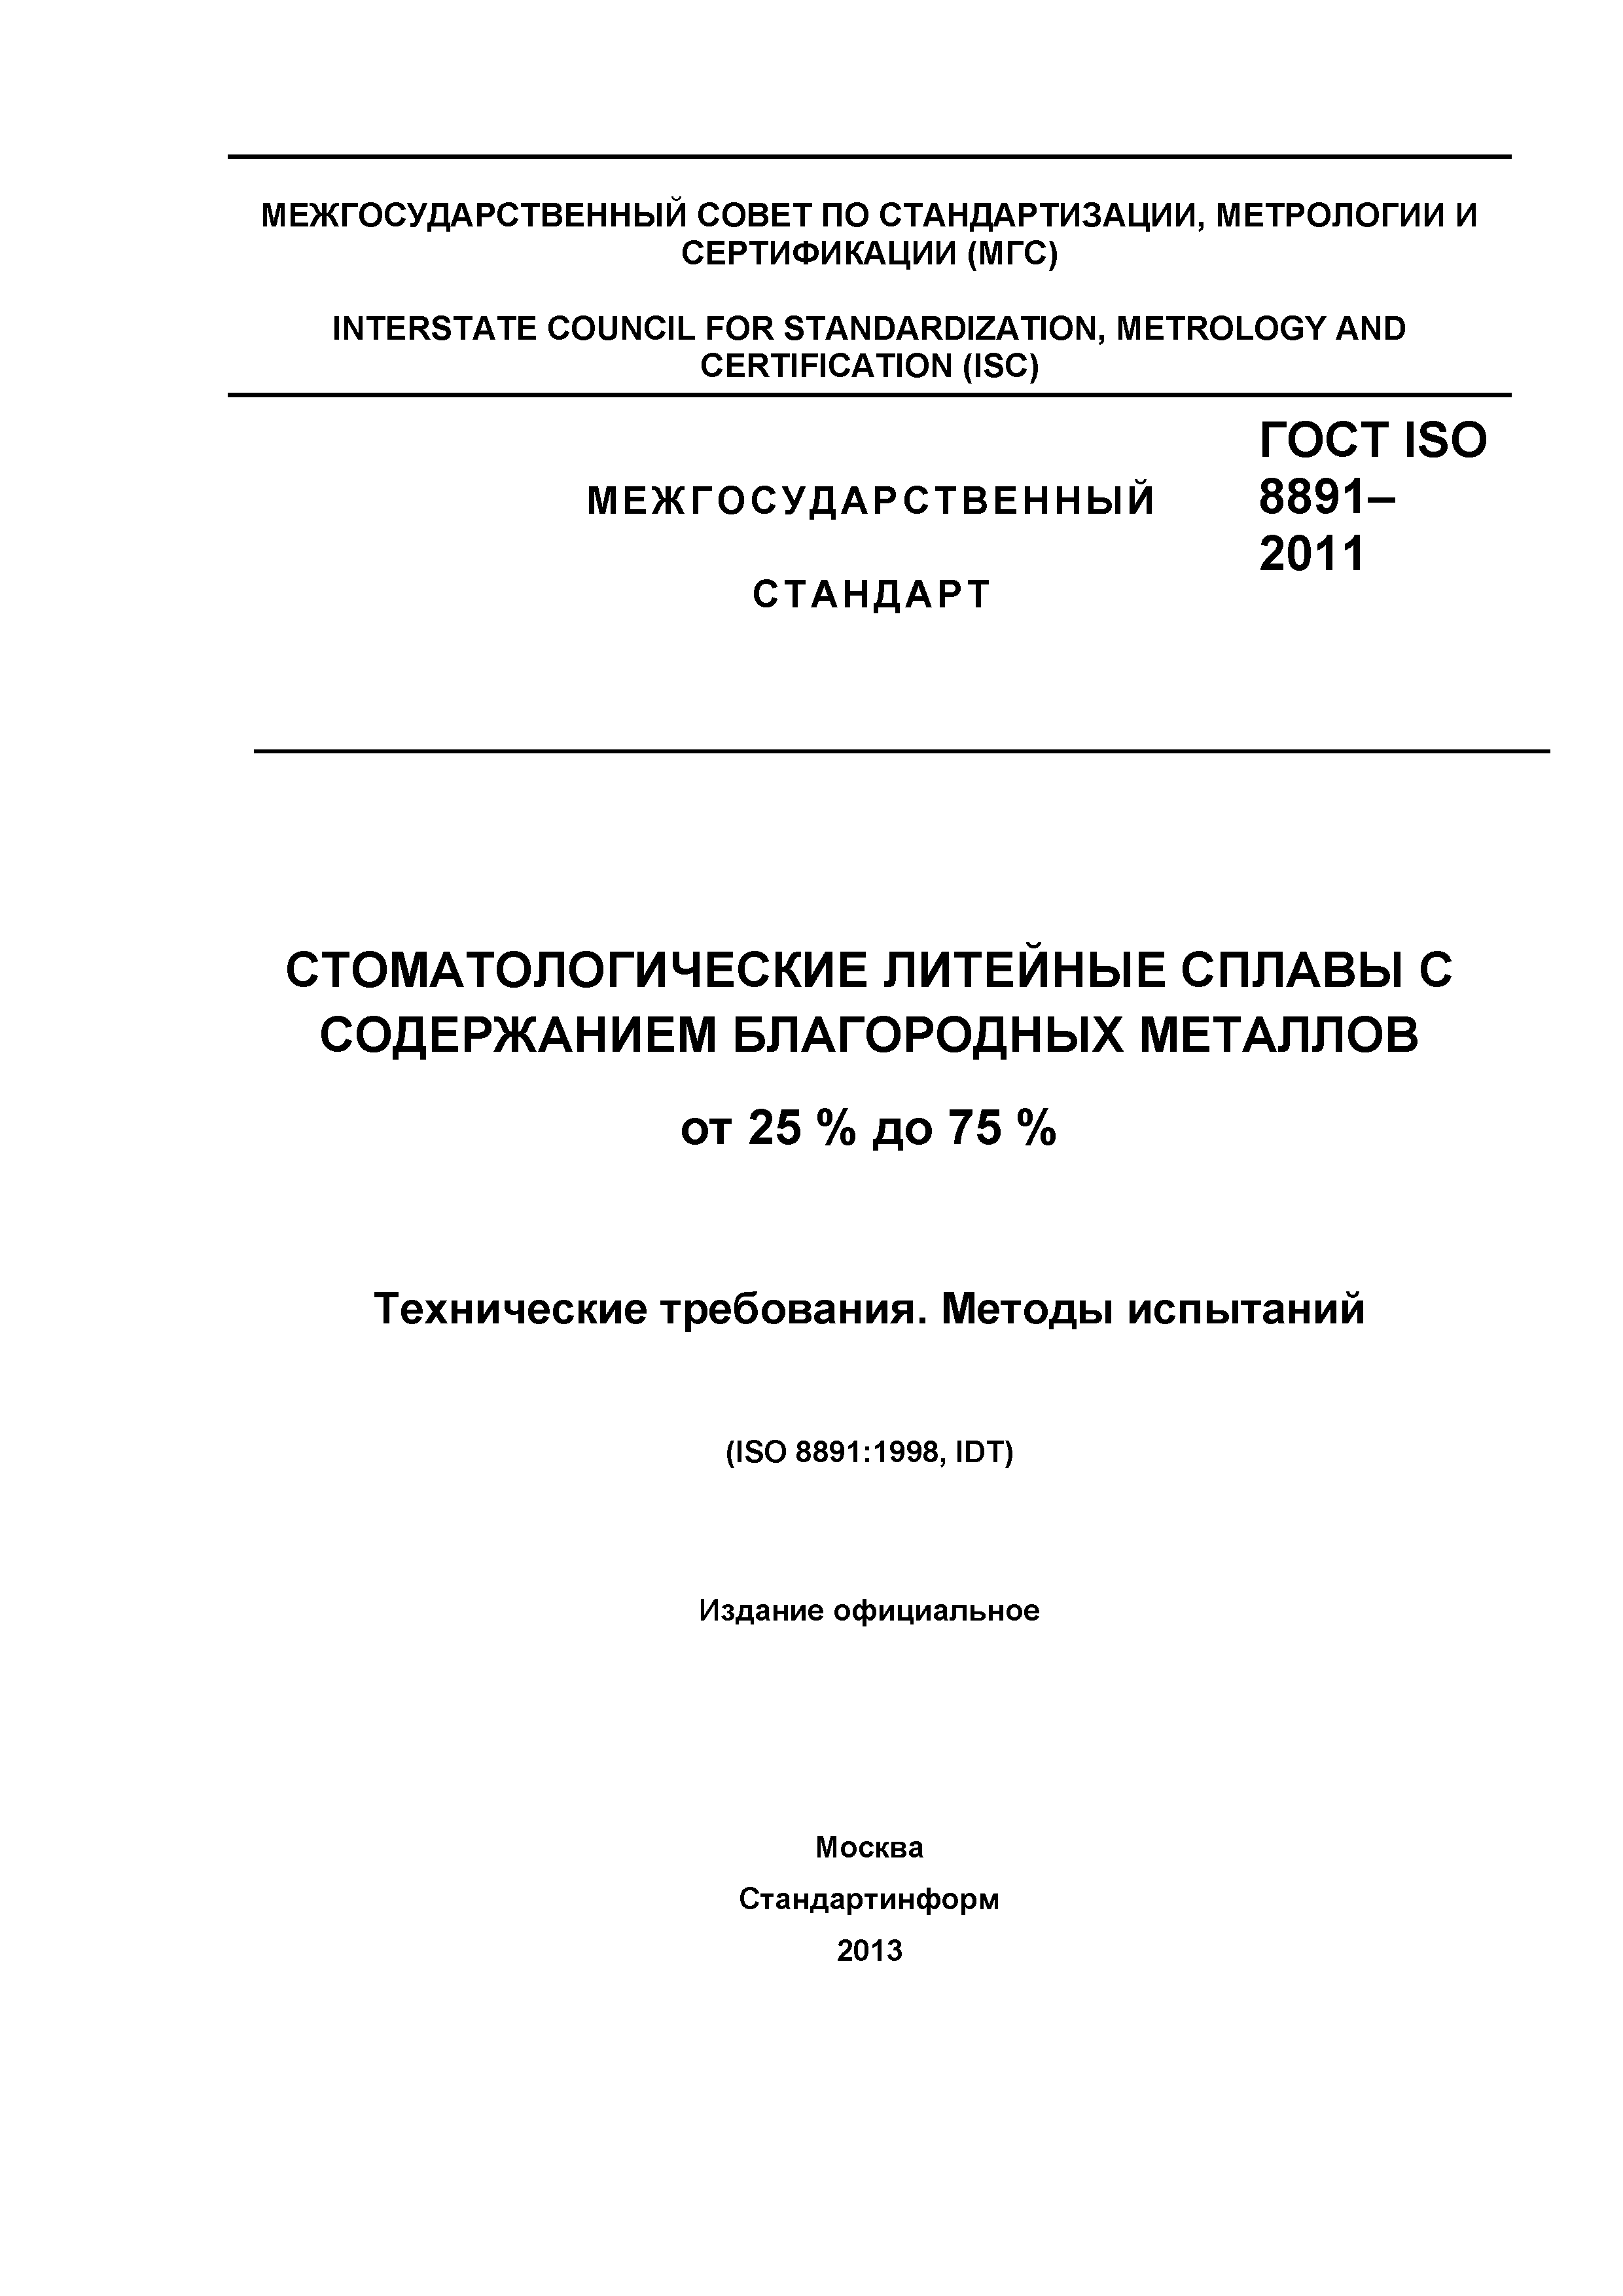 ГОСТ ISO 8891-2011